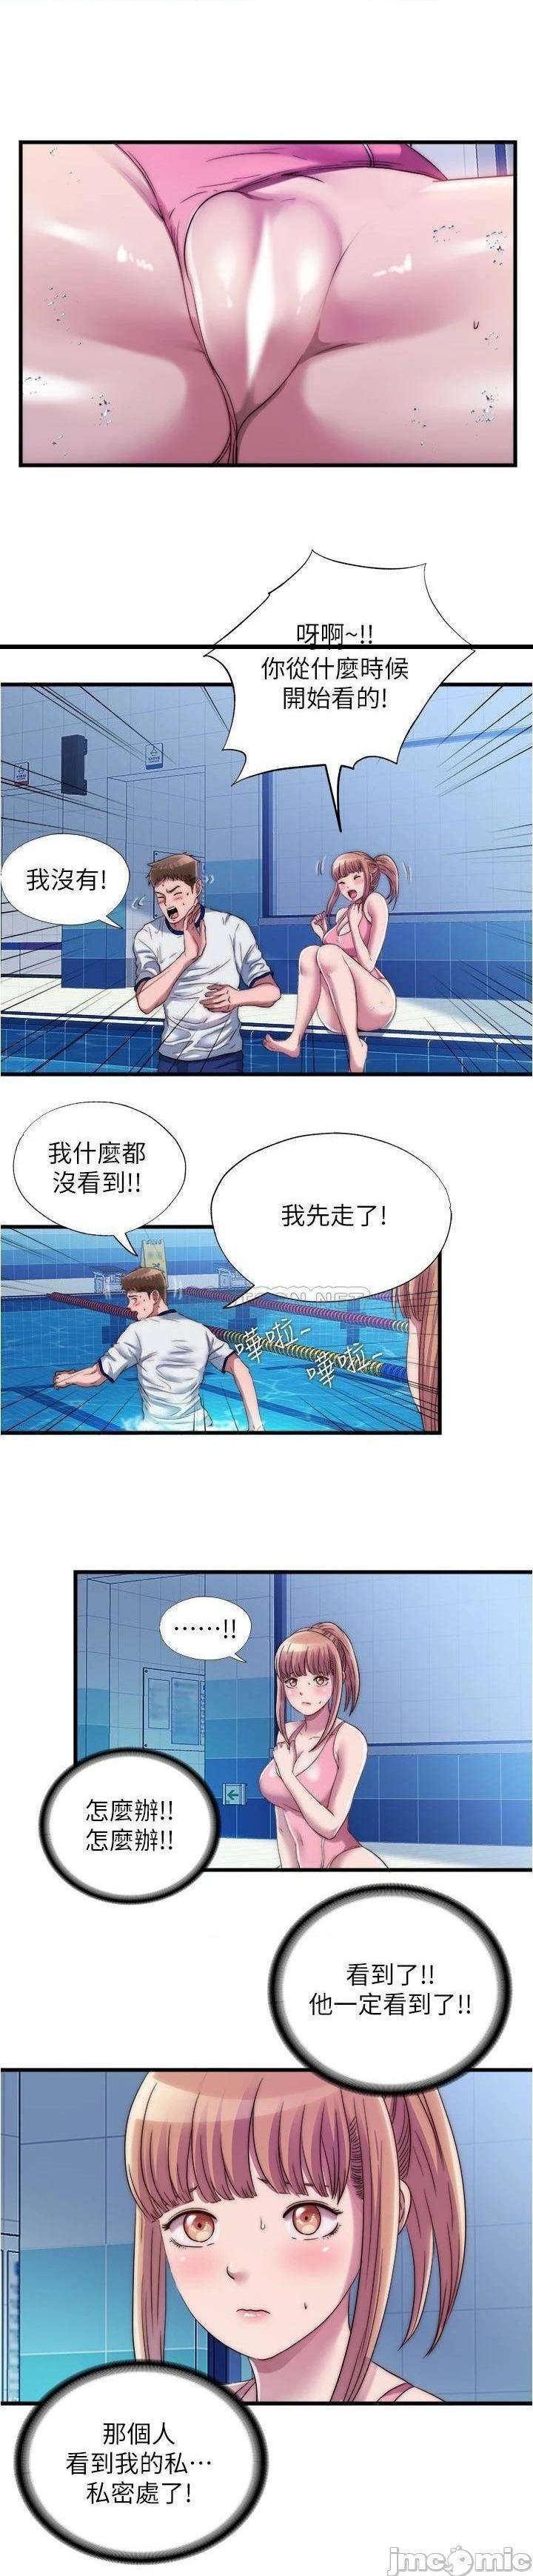 《满溢游泳池》漫画 第50话 不用脱泳衣直接来吧